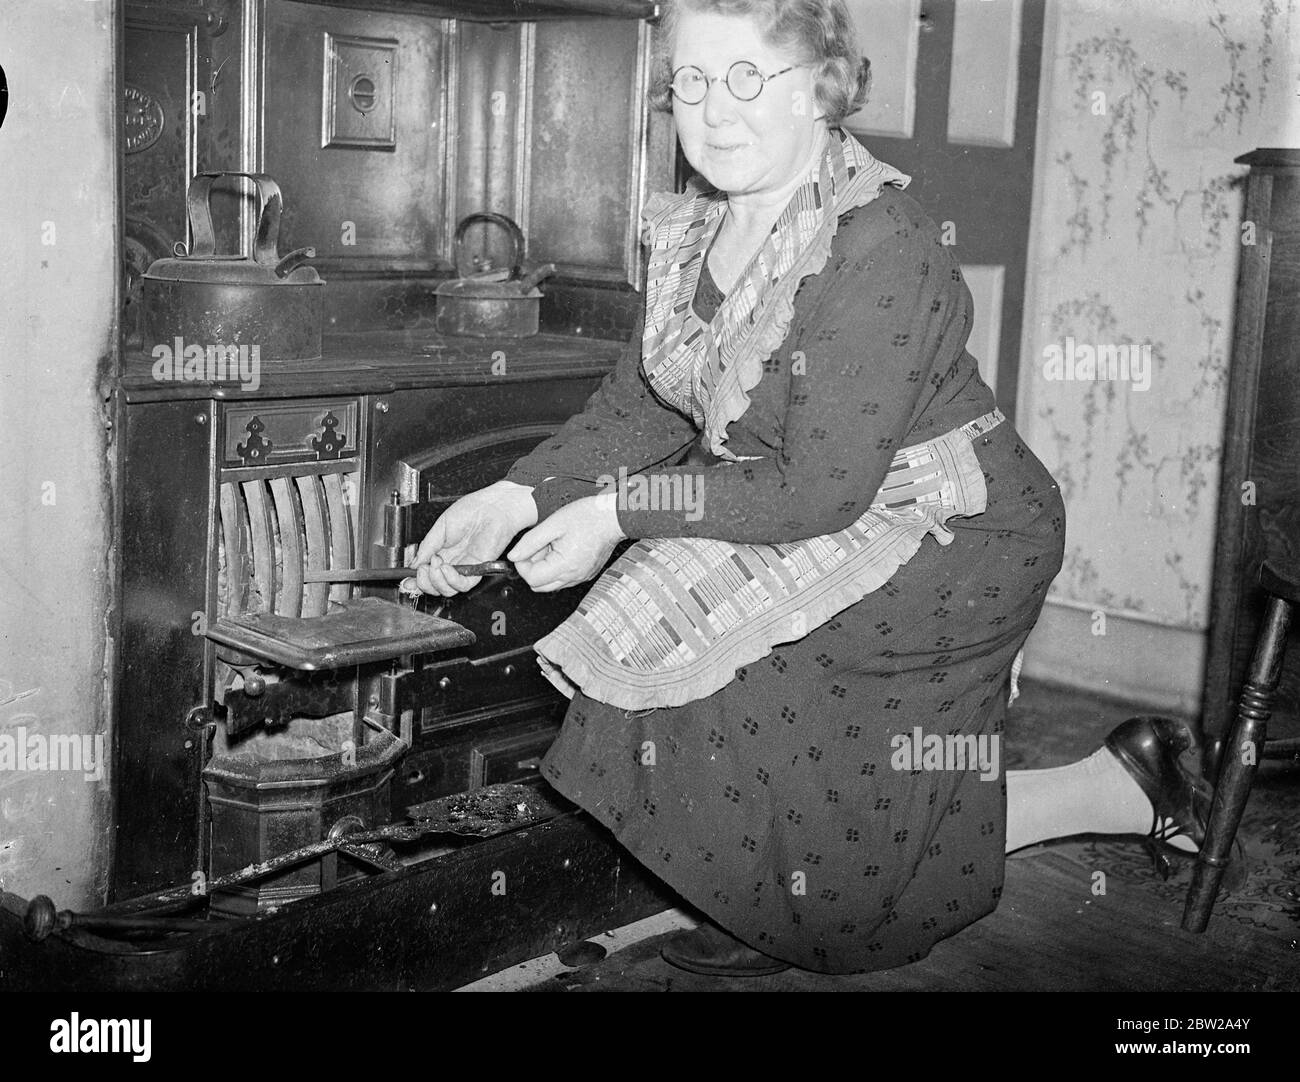 Mère de six enfants à être la première femme maire d'Islington. La Conseillère Mme J L Blythe, mère de six enfants, a été nommée maire d'Islington. Elle sera la première femme maire, l'arrondissement a jamais eu / 6 novembre 1937 Banque D'Images